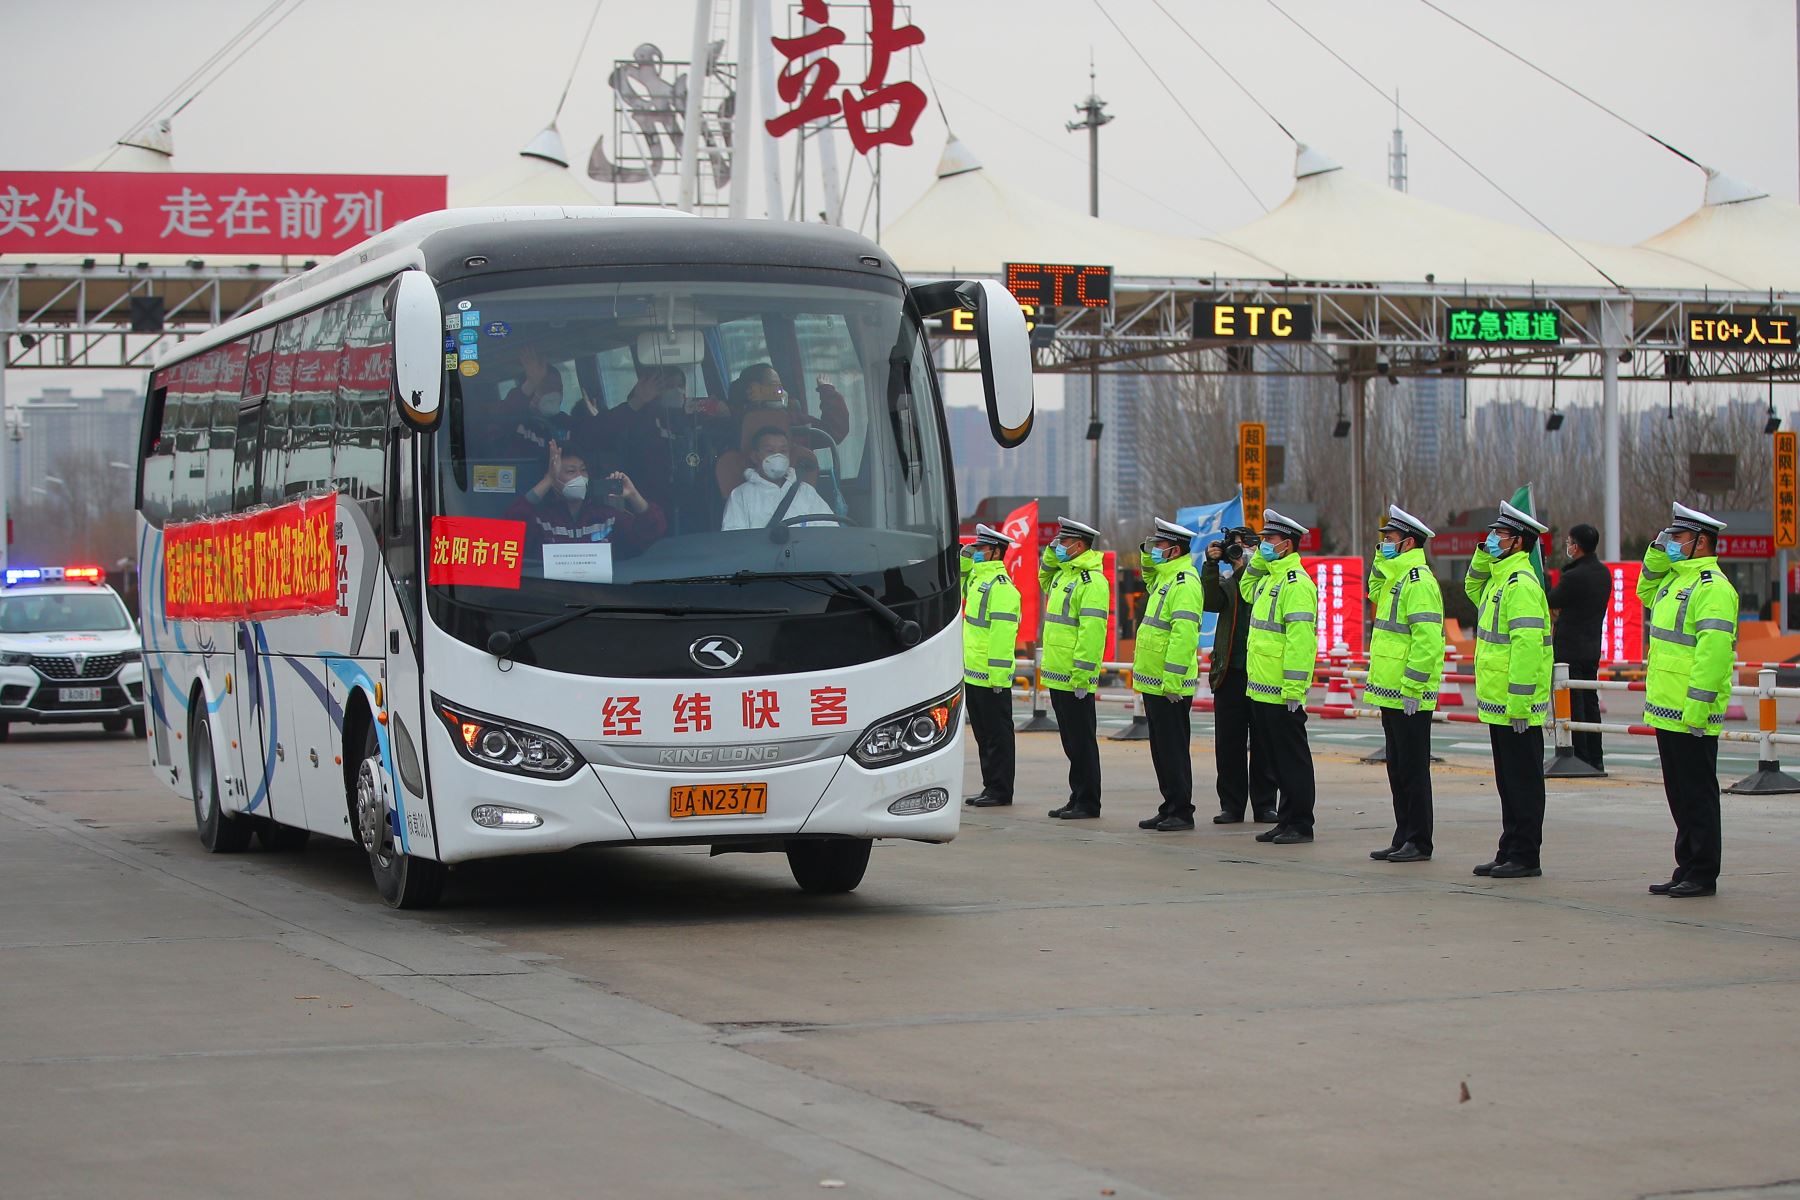 Un equipo de apoyo médico proveniente de Liaoning, que consiste de 173 miembros, dejó la provincia de Hubei a medida que el brote epidémico en la provincia afectada ha sido moderado. 
Foto: Agencia Xinhua